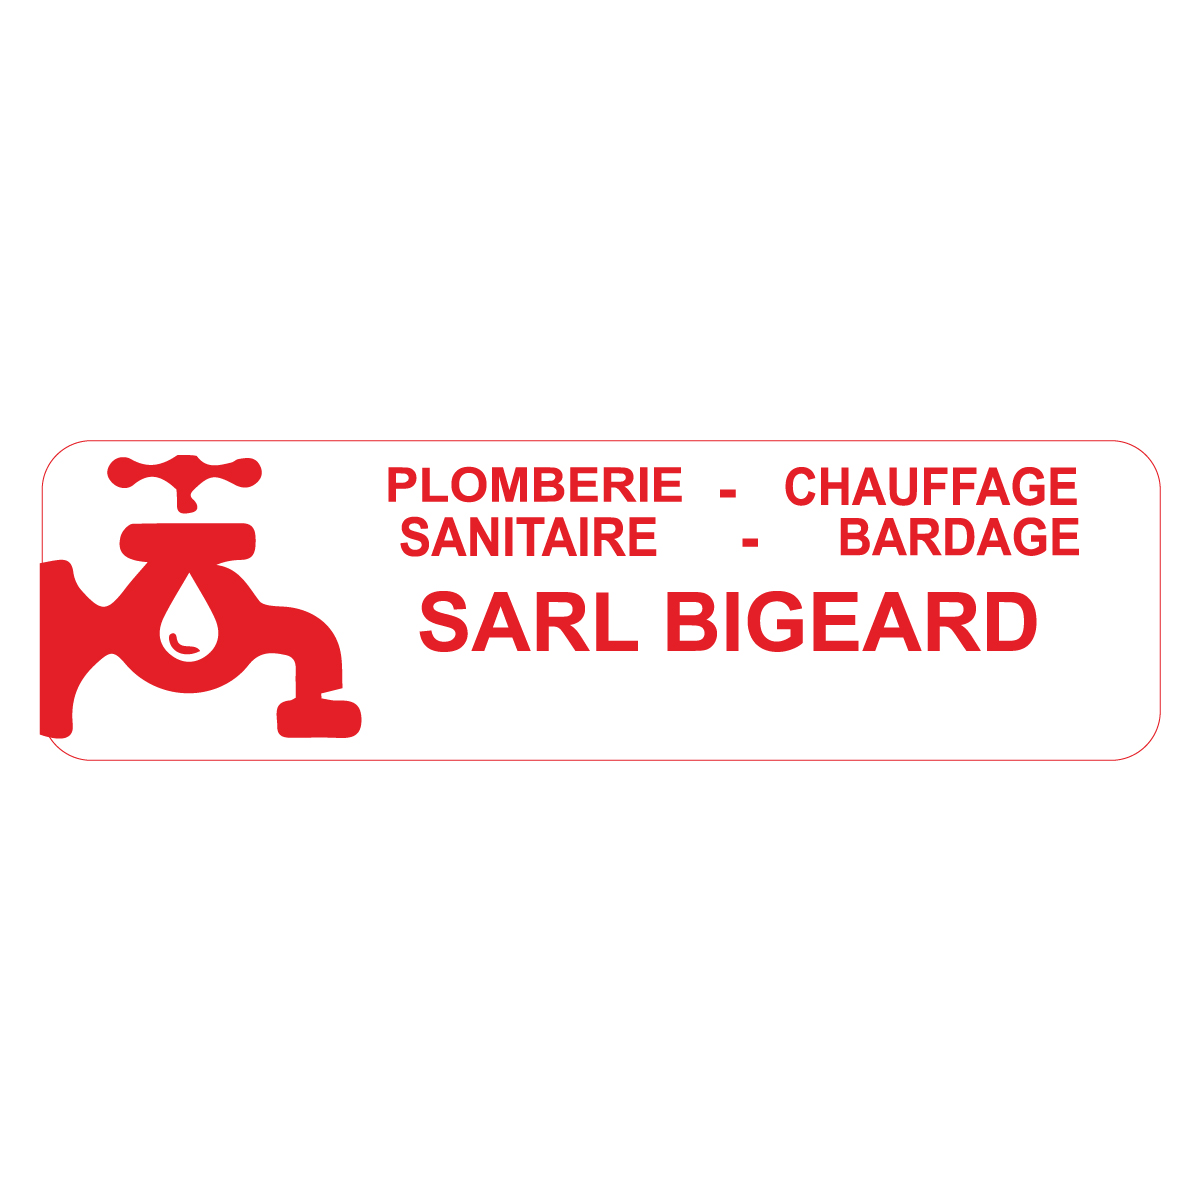 (c) Chauffage-bigeard.fr